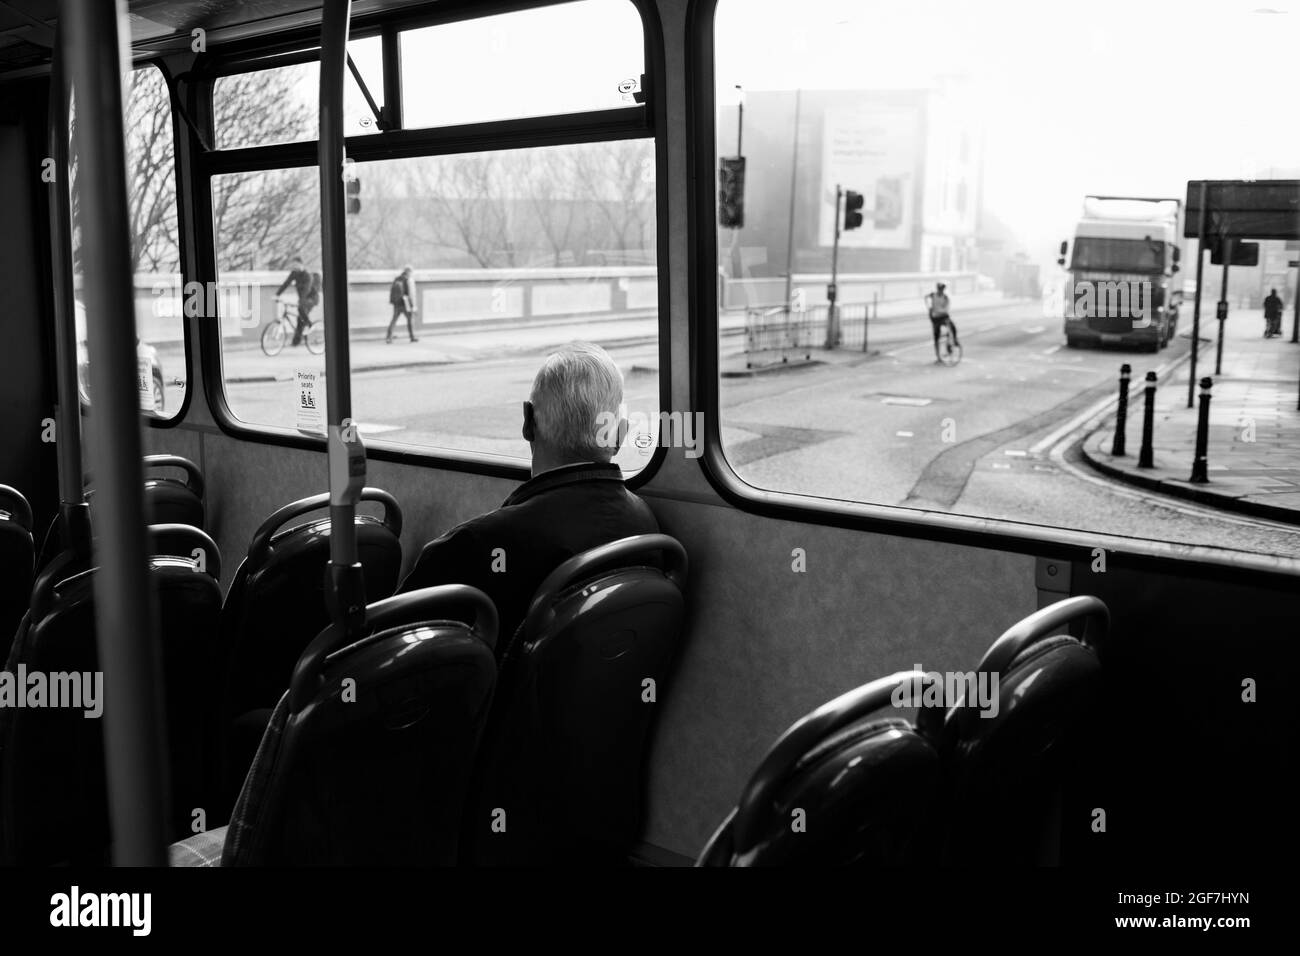 Intérieur du bus avec un passager qui regarde par la vitre. Banque D'Images